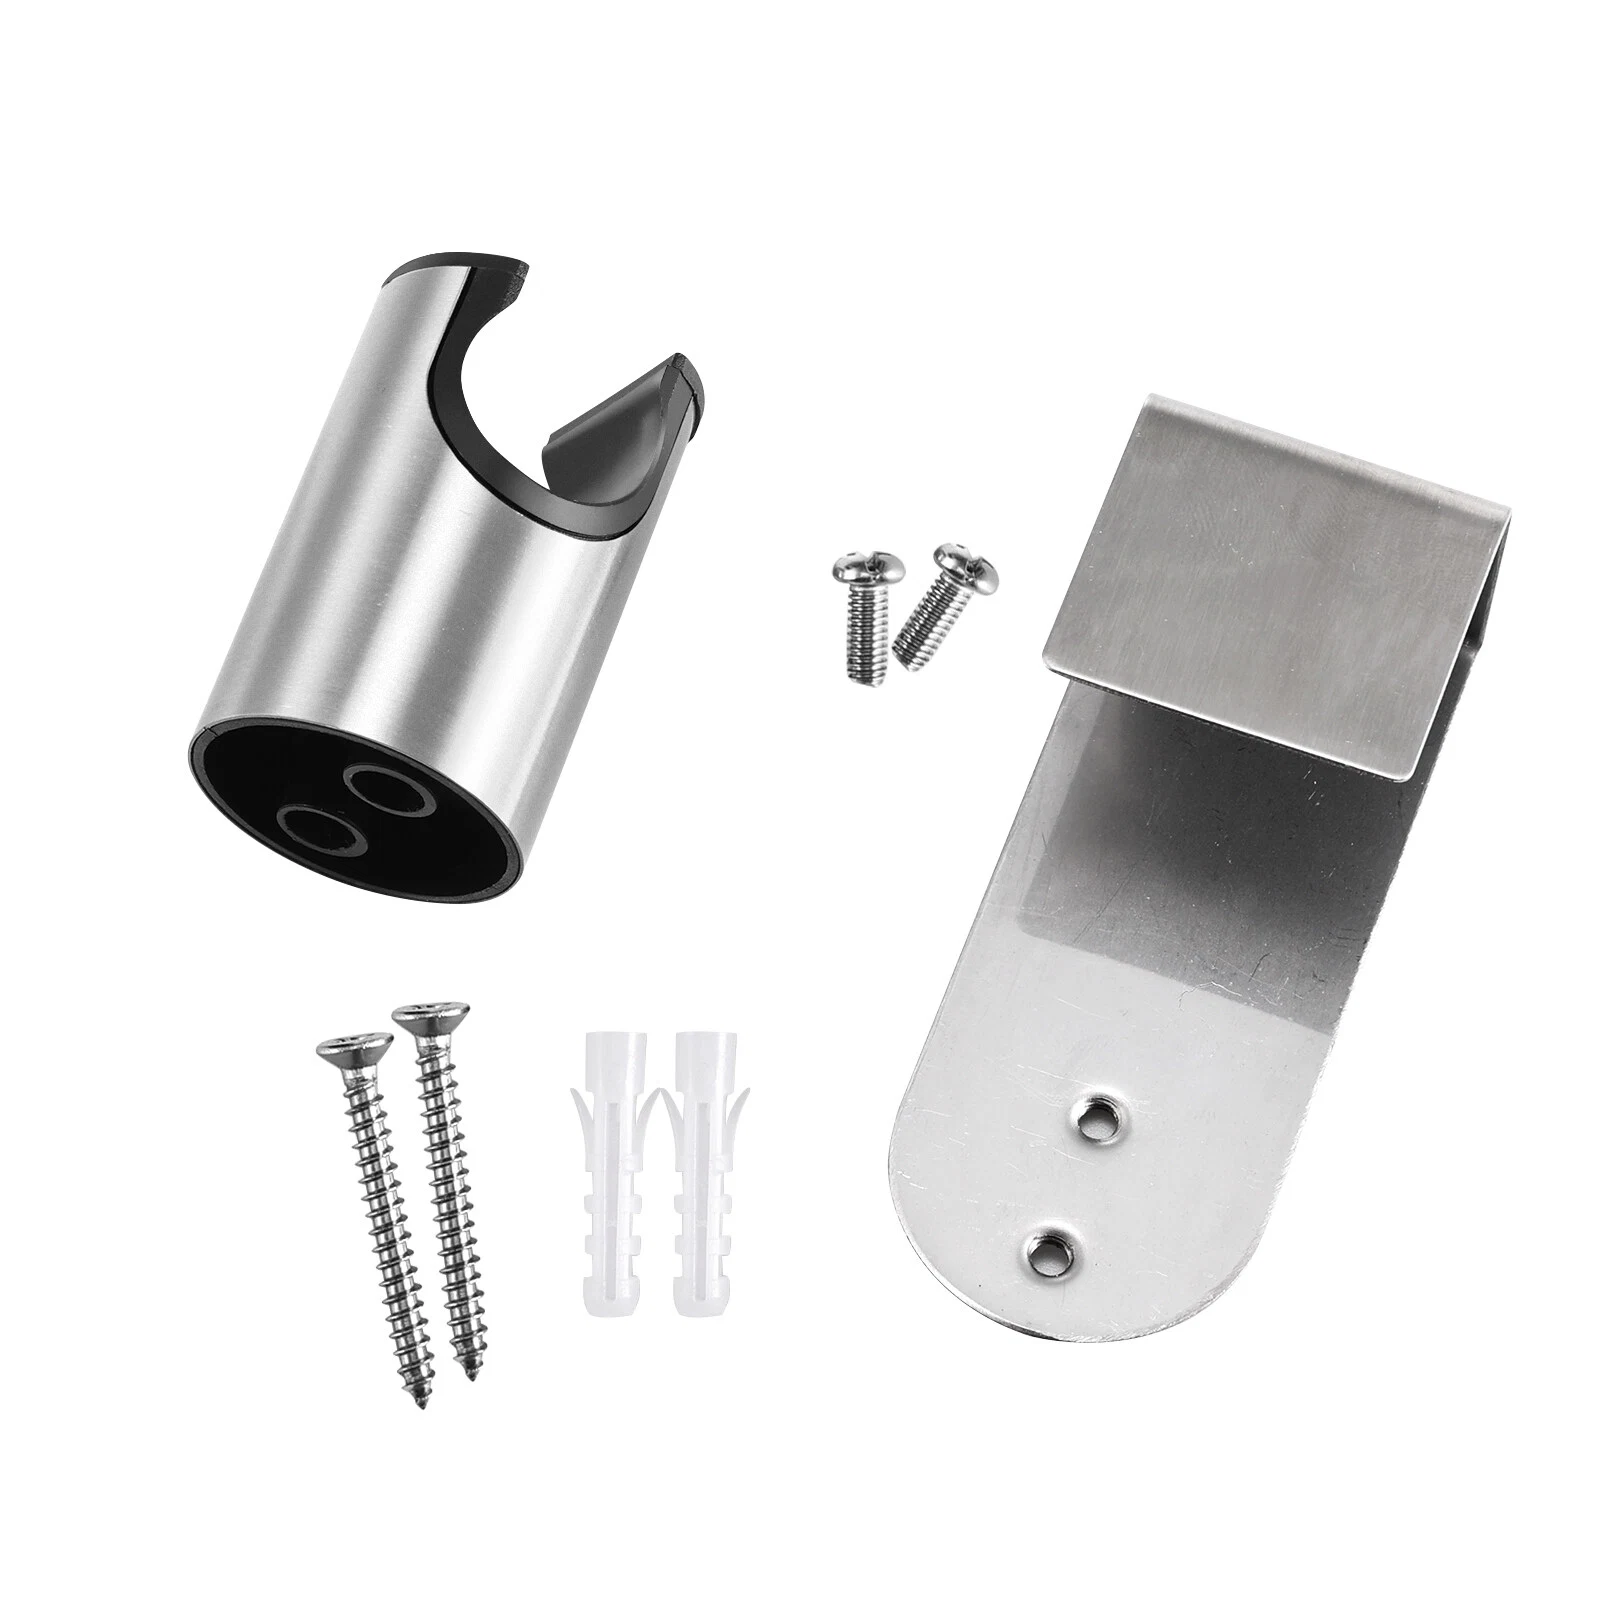 Stainless Steel SUS304 Bathroom Toilet Holder Hook Hanger for Shower Toilet Bidet Sprayer